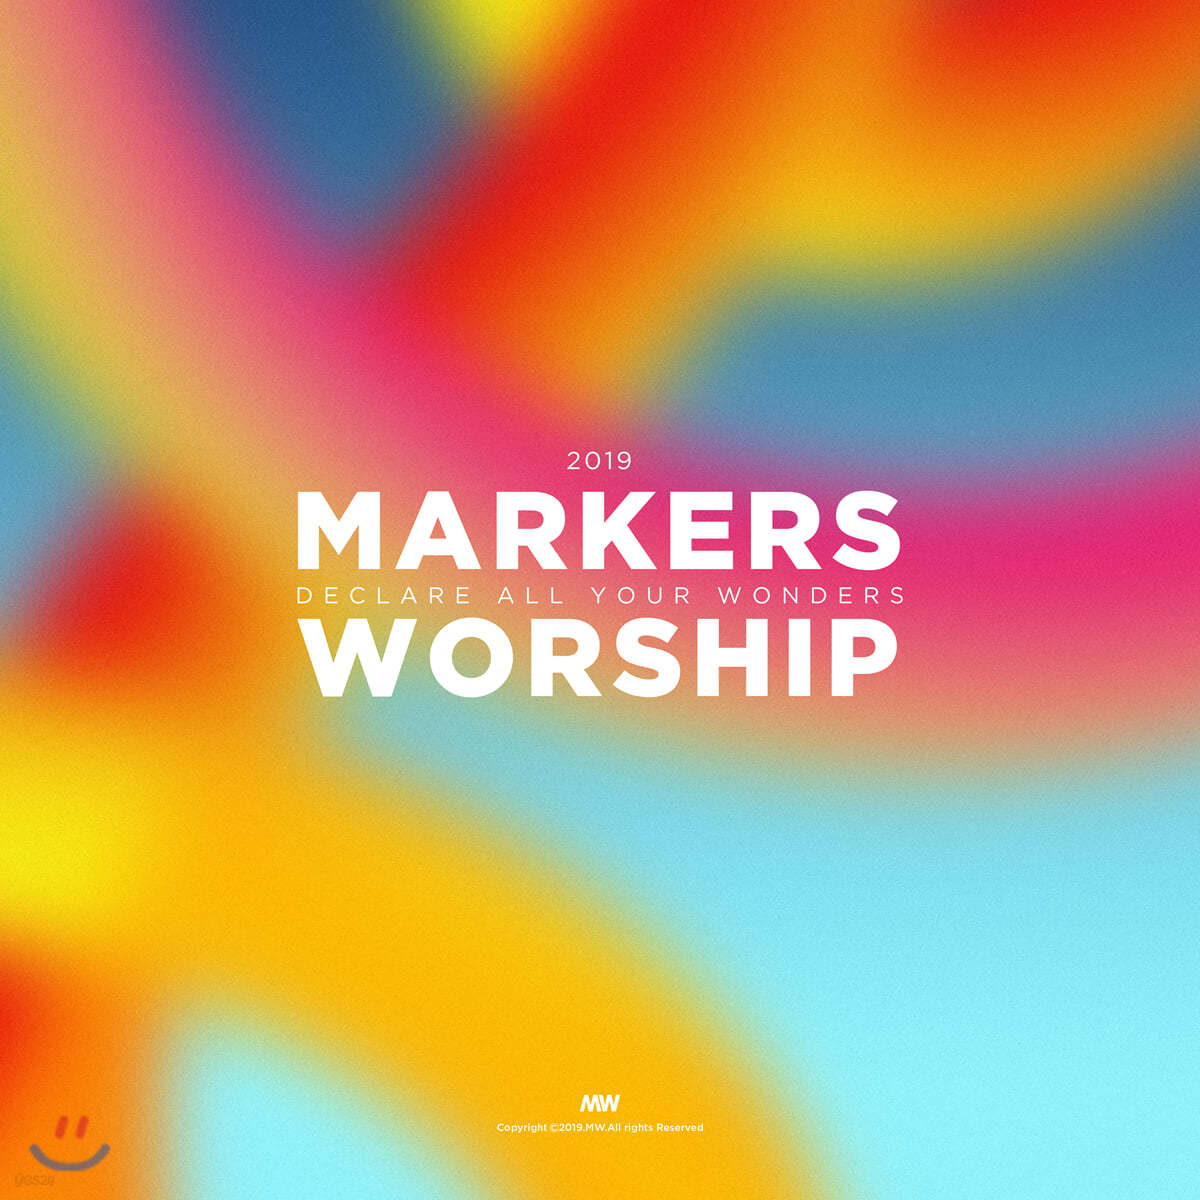 마커스워십 2019 (Markers Worship 2019 - Declare All Your Wonders)